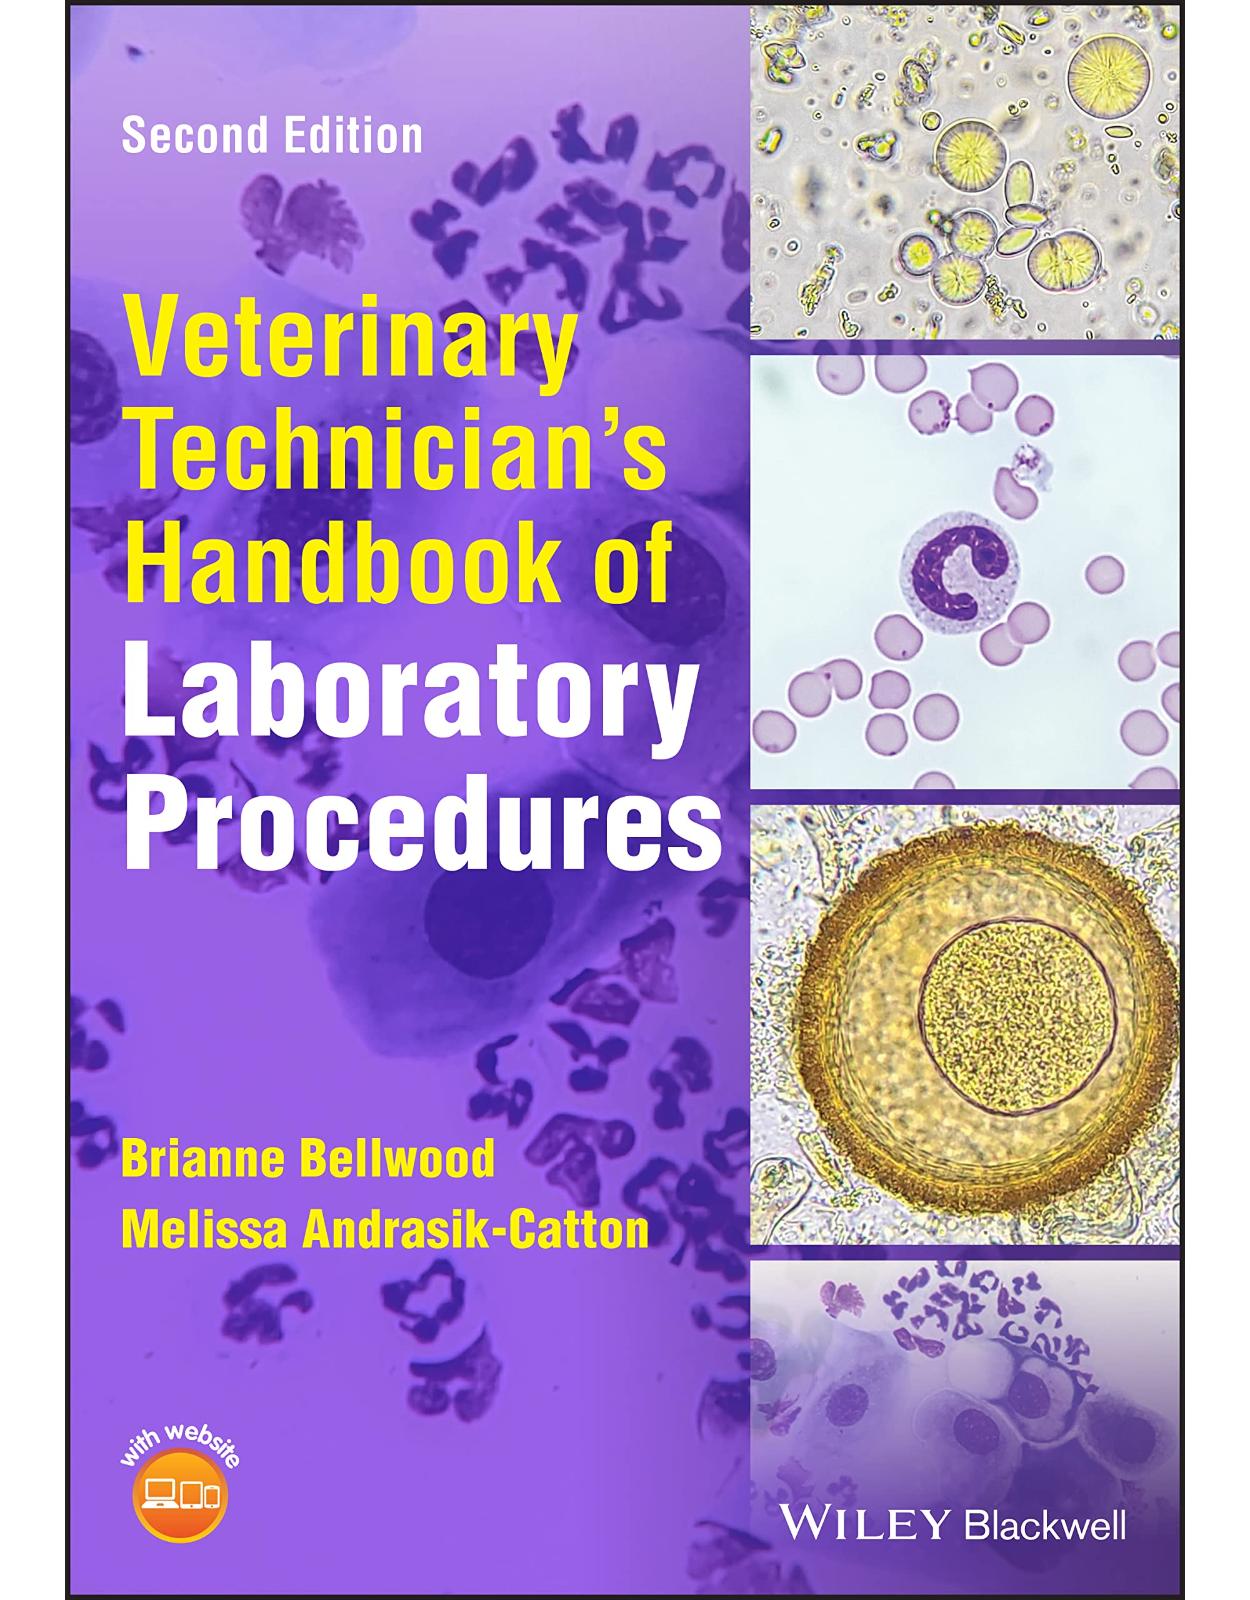 Veterinary Technician’s Handbook of Laboratory Procedures